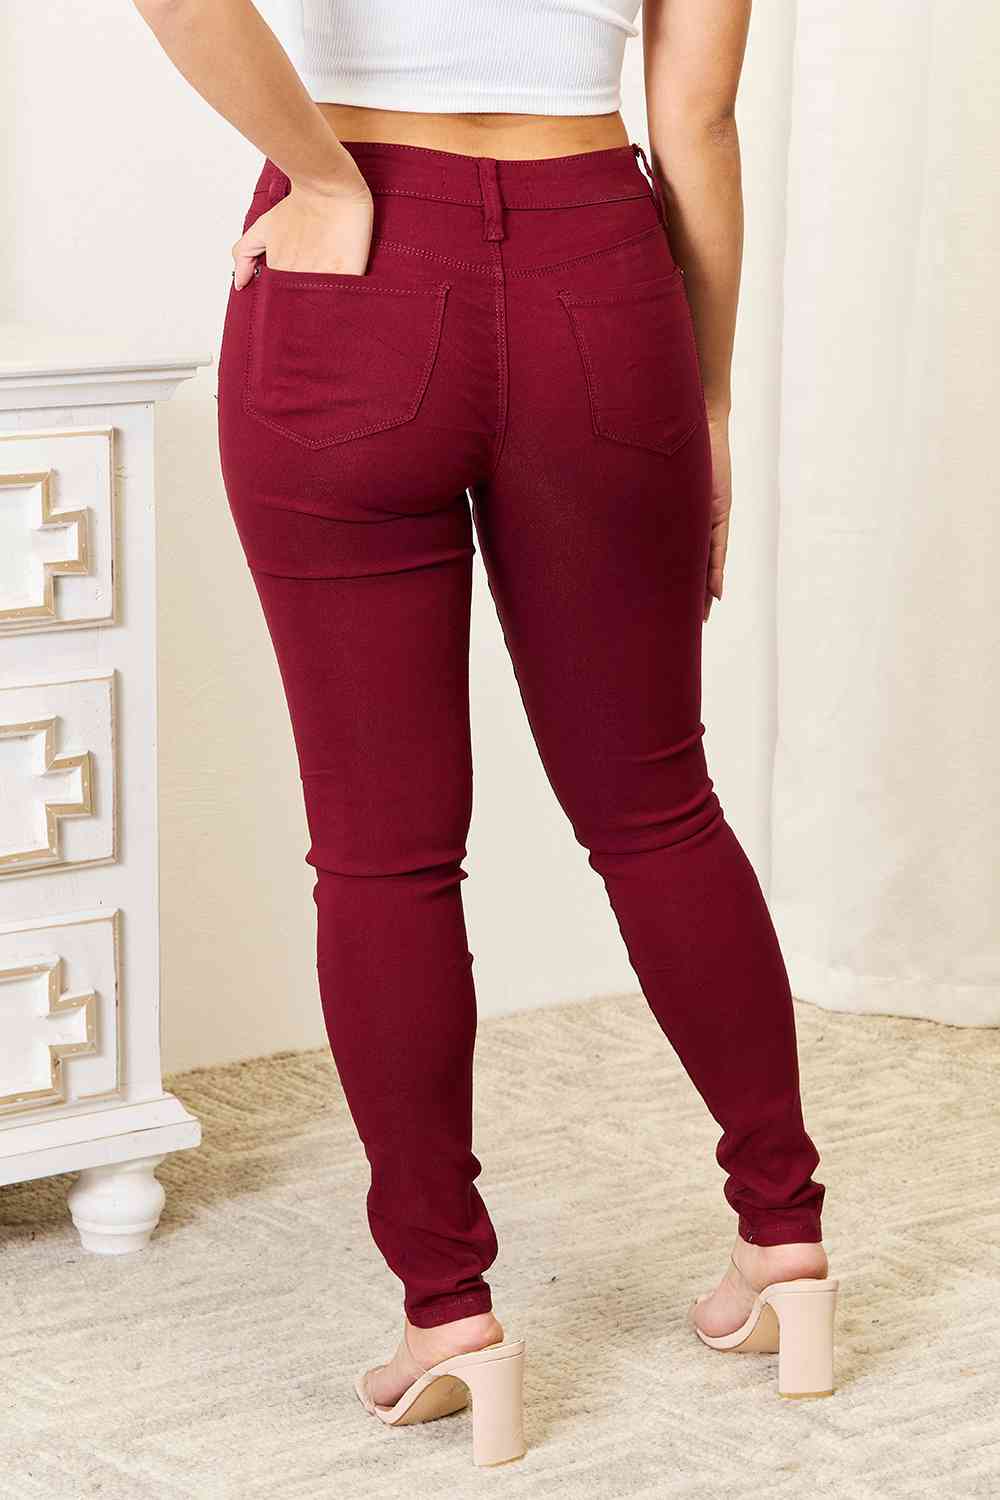 YMI Jeanswear Skinny Jeans with Pockets